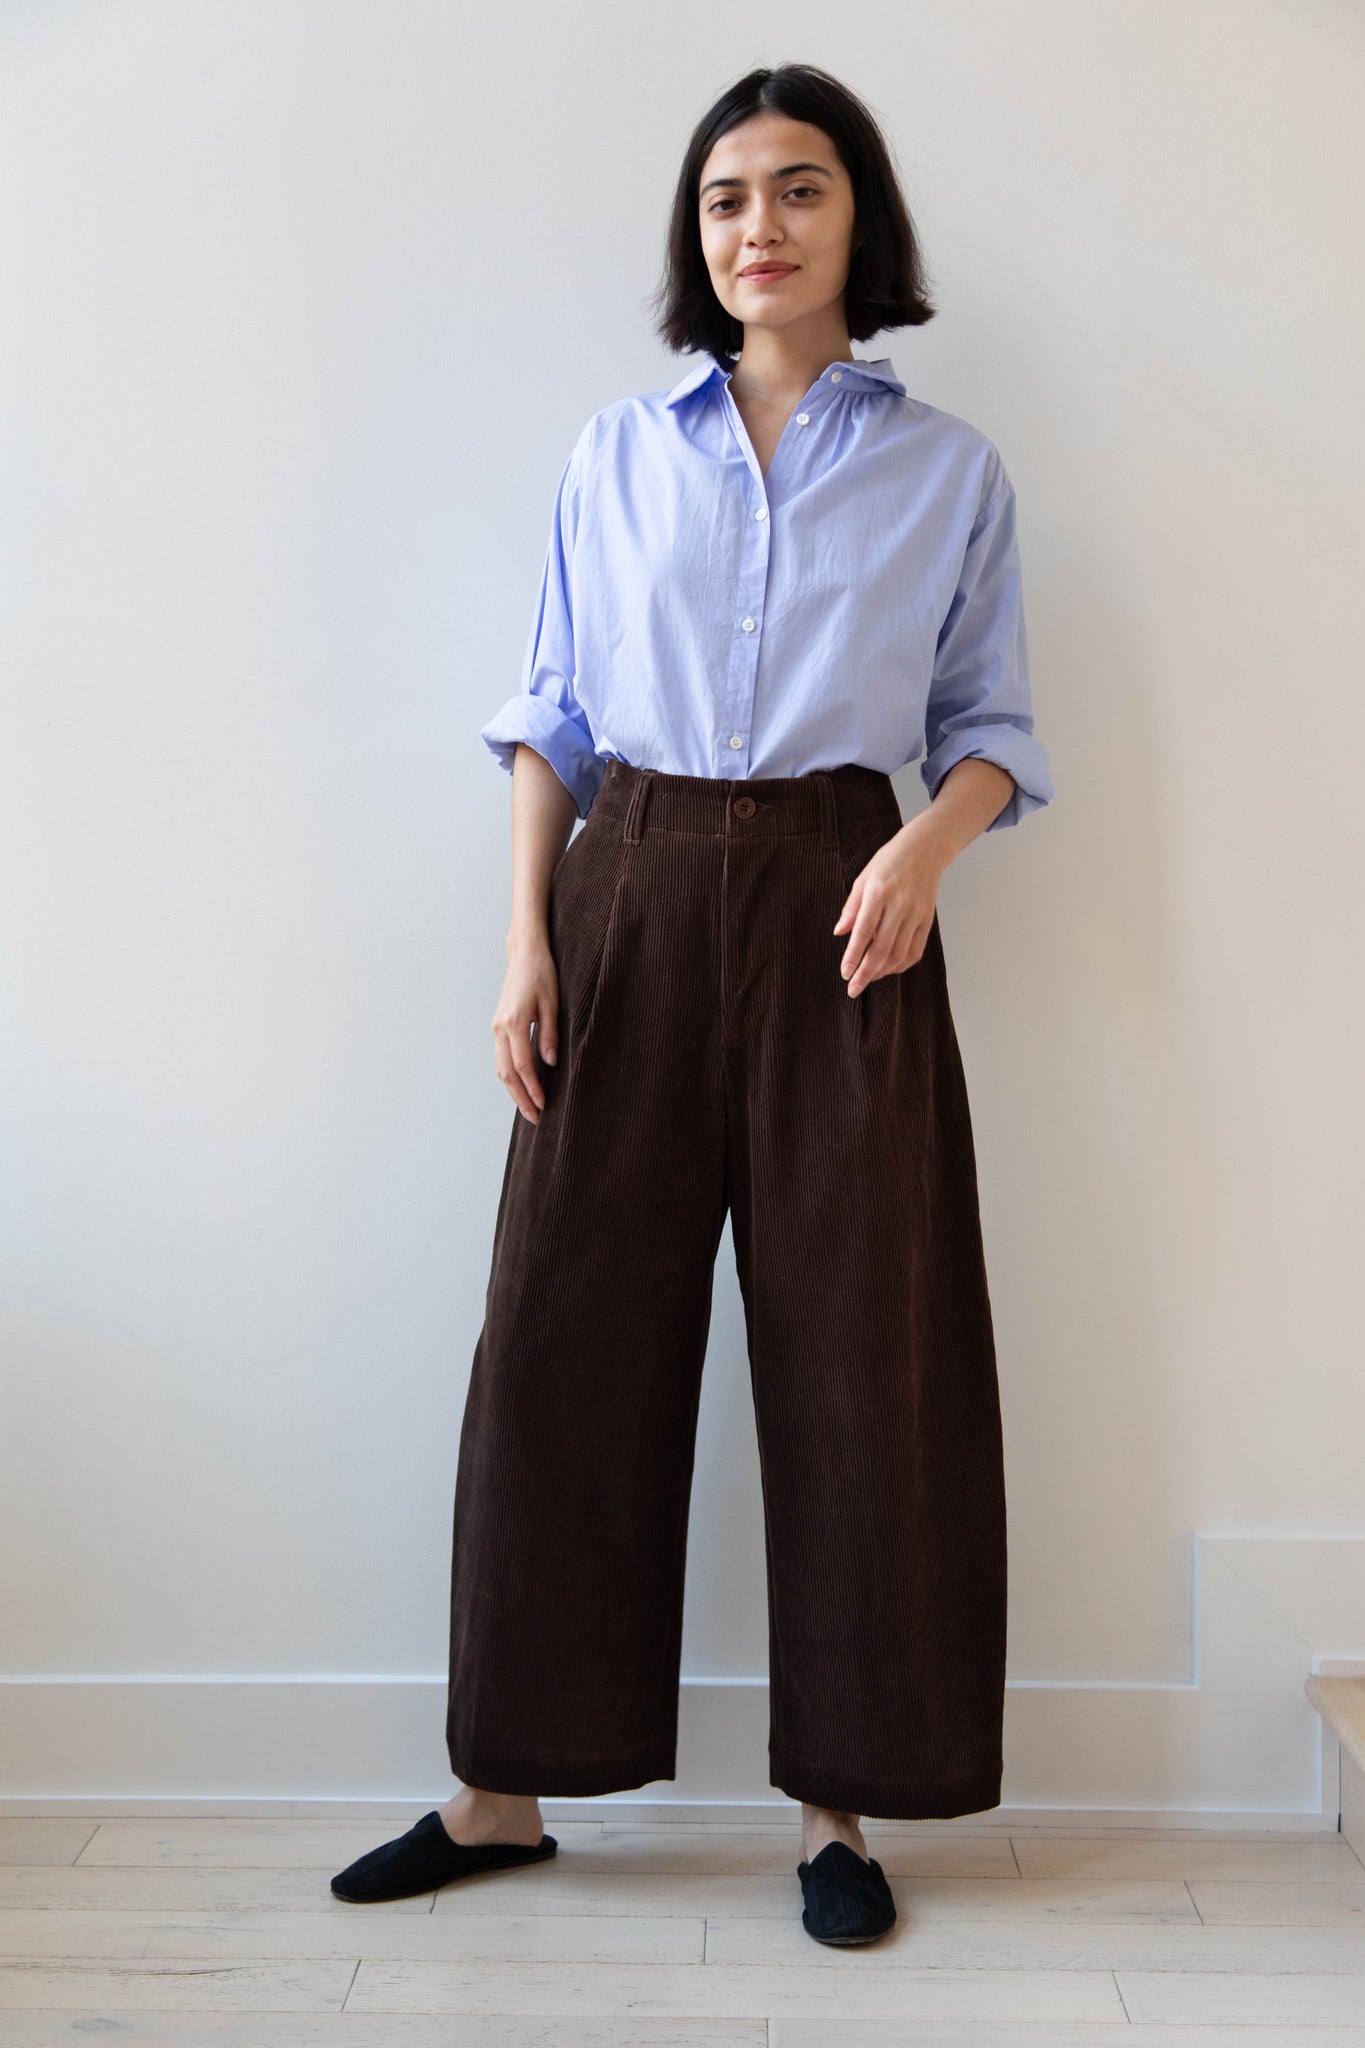 Aseedonclöud | HW Wide Trousers in Brown Corduroy